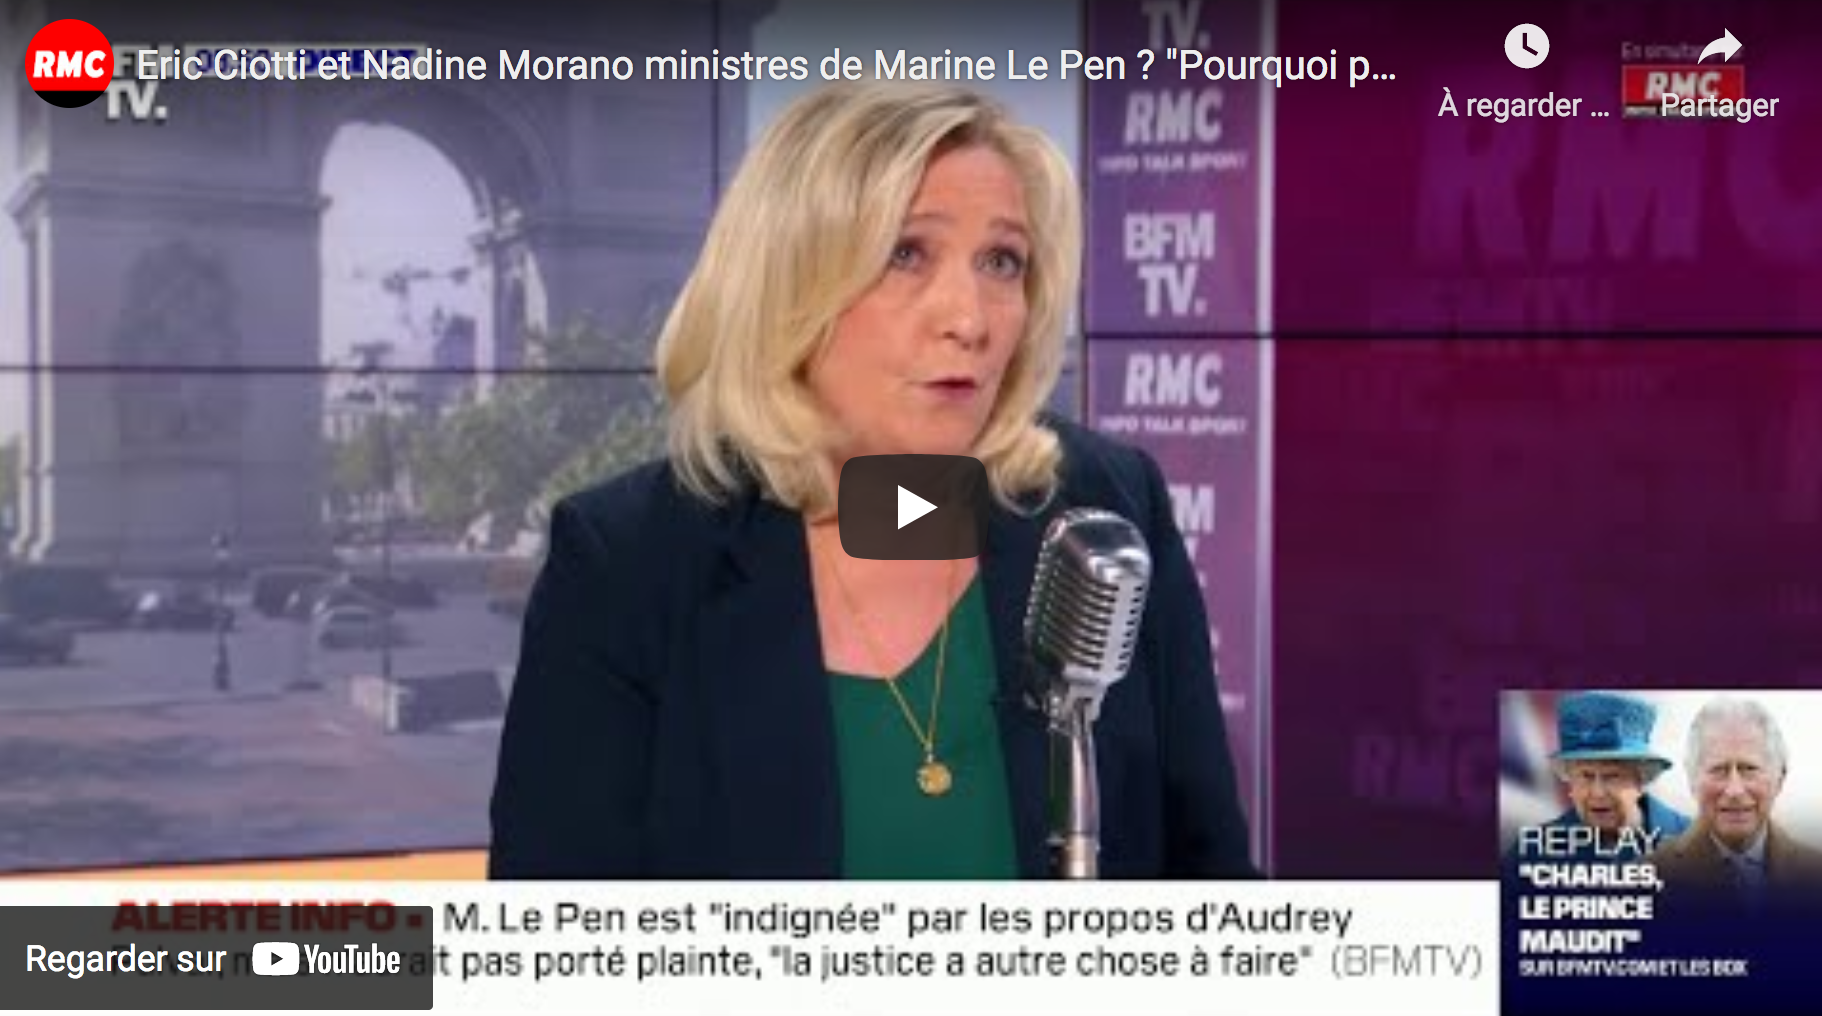 La grande erreur de Marine Le Pen en 2012, 2017 et 2022 : ne jamais parler à la droite ou thématiser sur l’identitaire / le sécuritaire